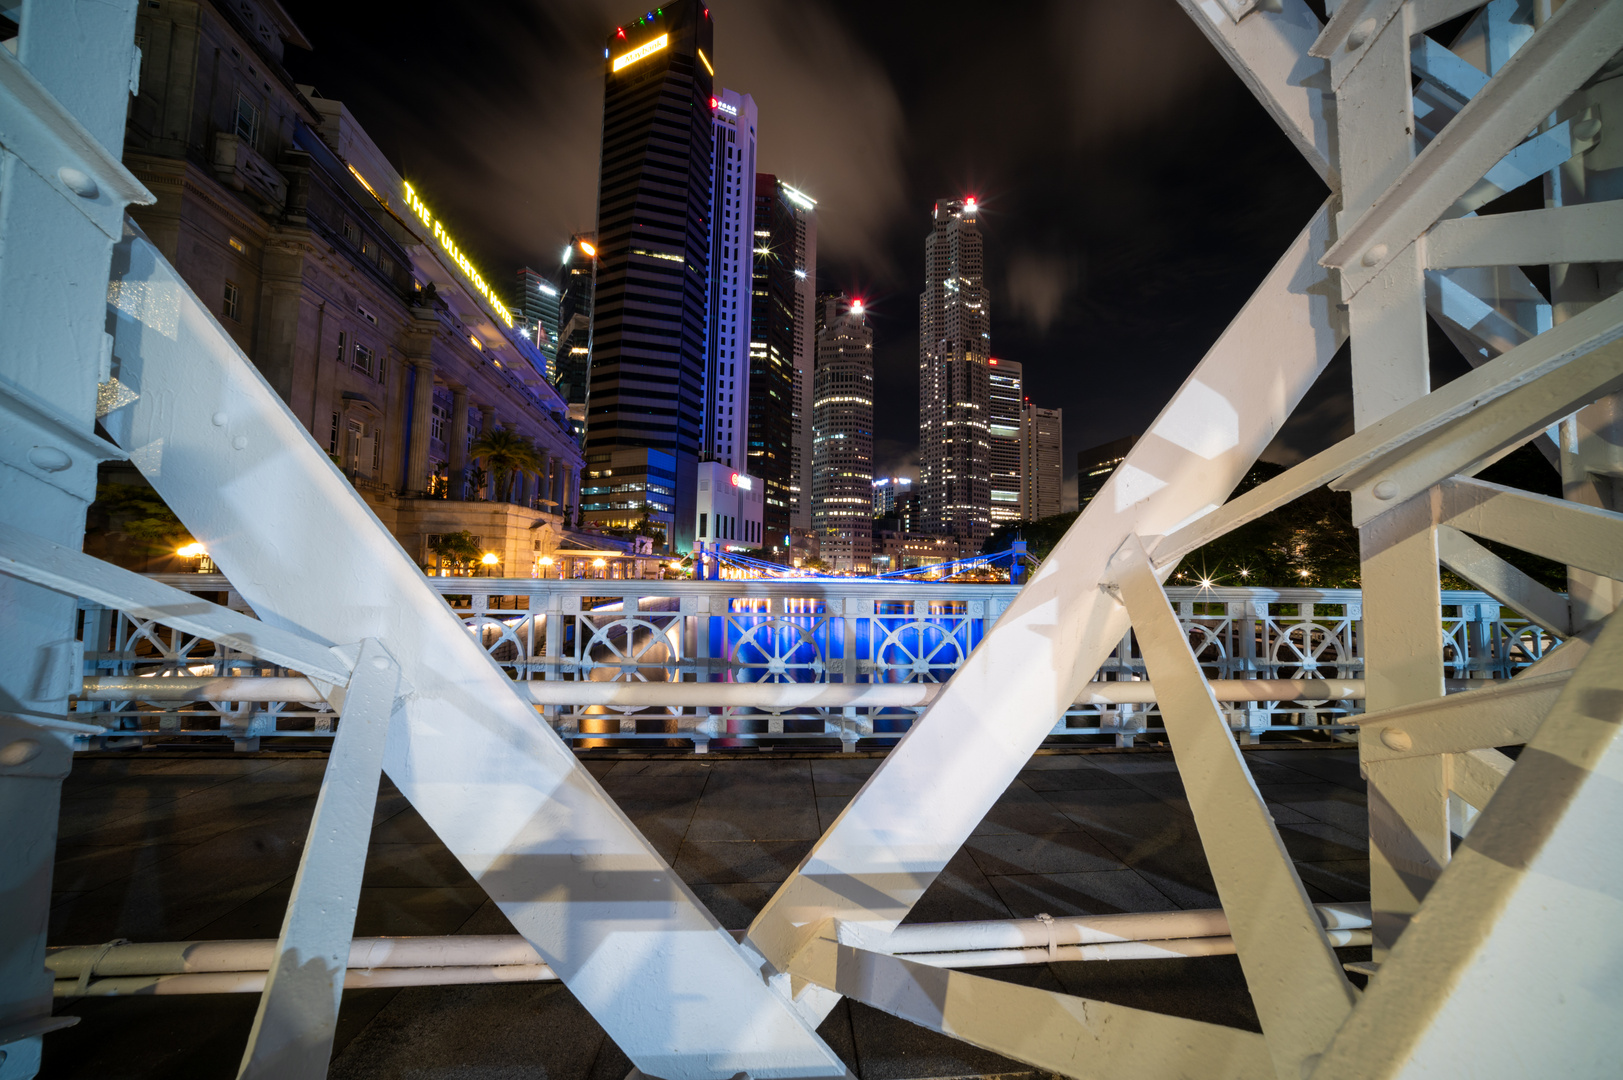 Singapore at night Skyline through Anderson Bridge